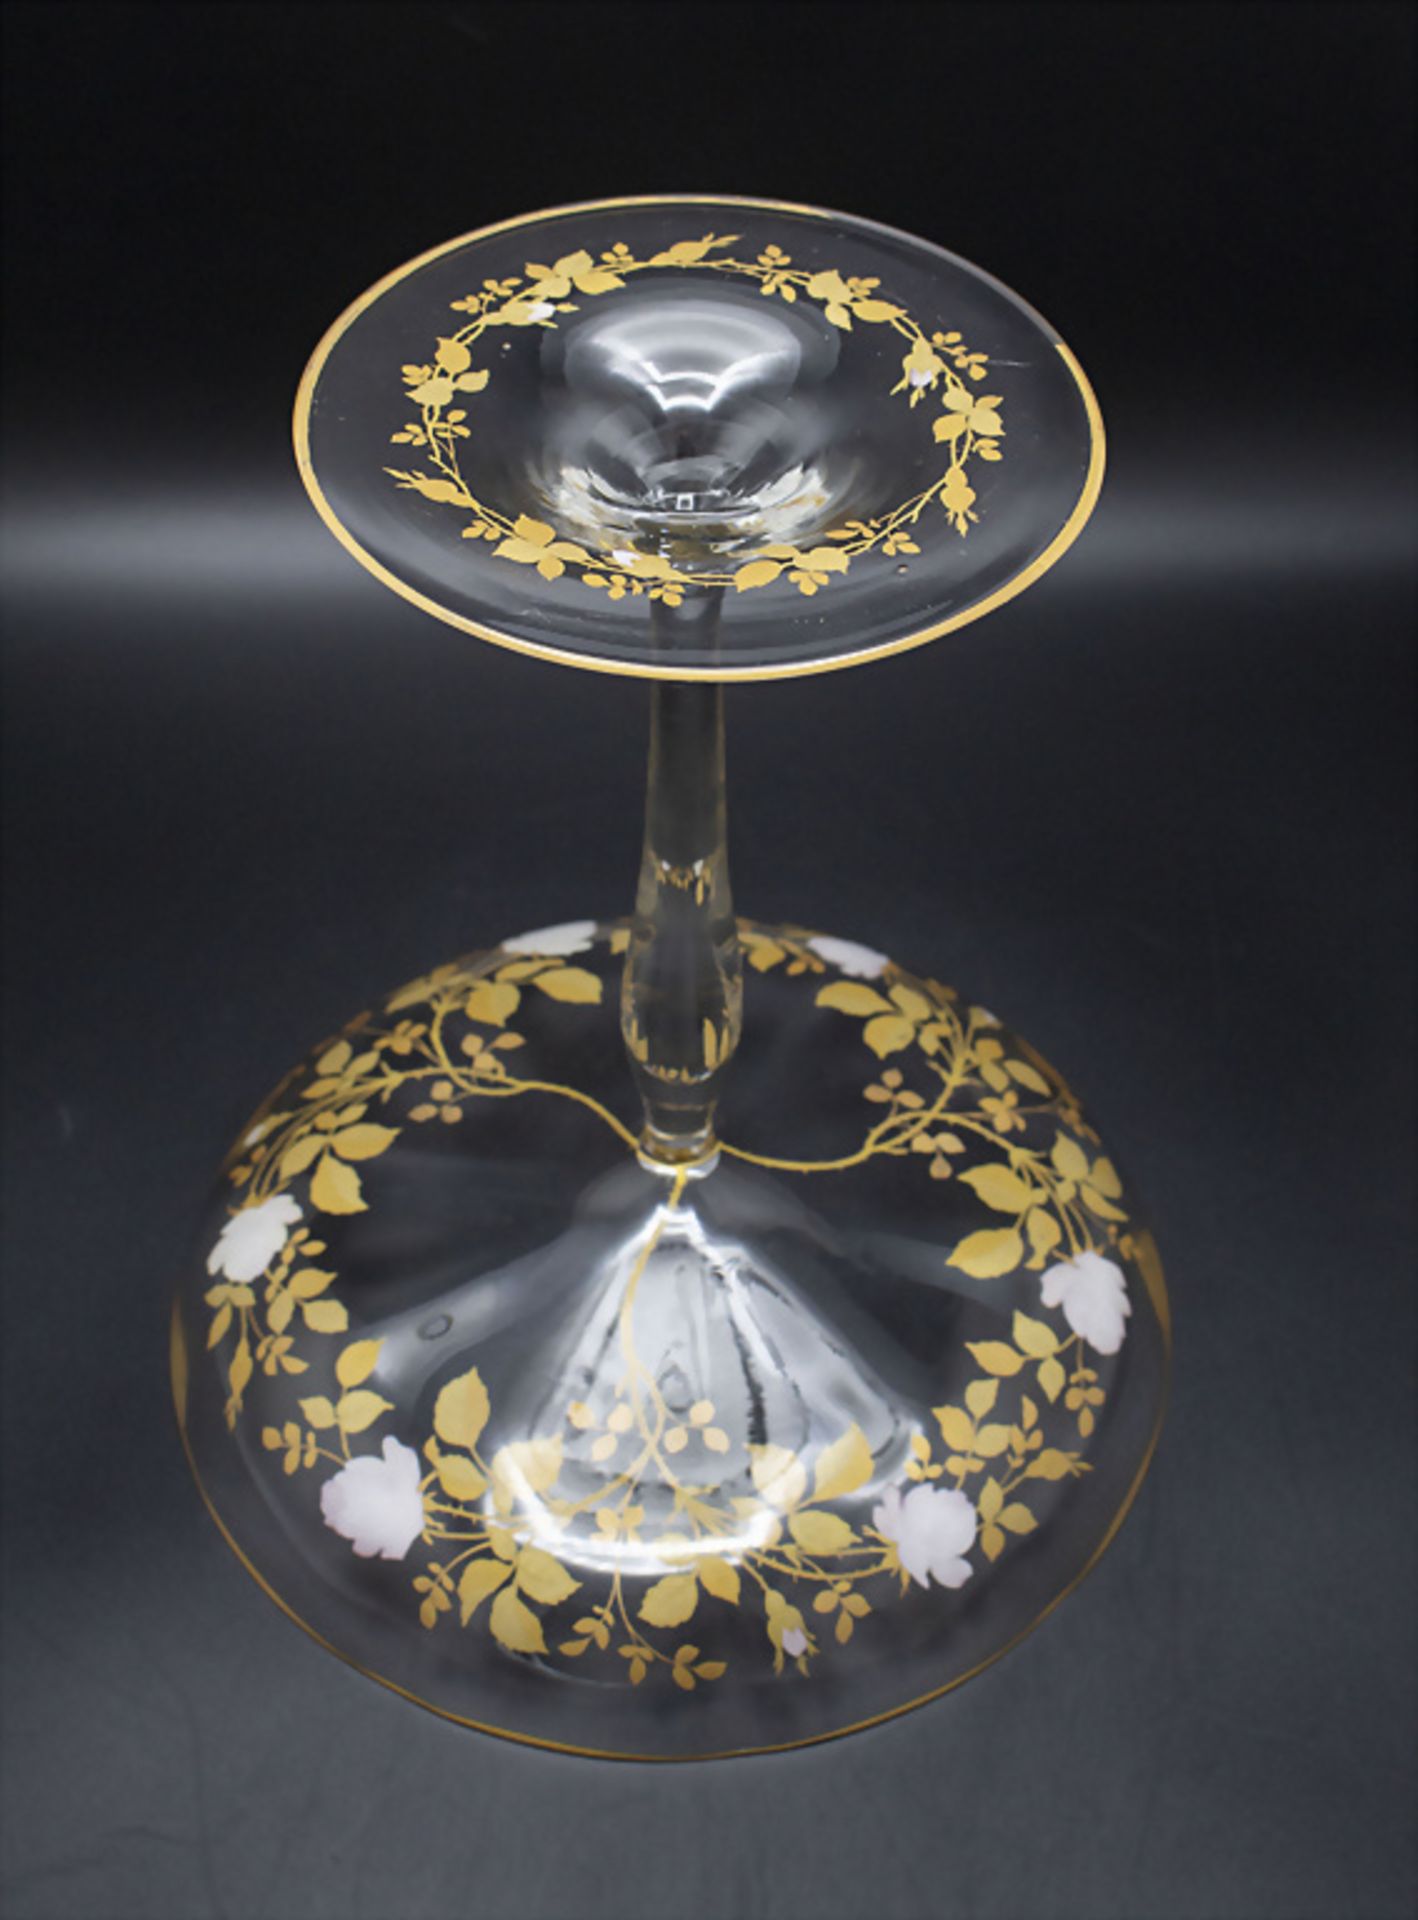 Jugendstil Konfektschale mit Emailmalerei / An Art Nouveau enamelled glass candy bowl, ... - Image 3 of 4